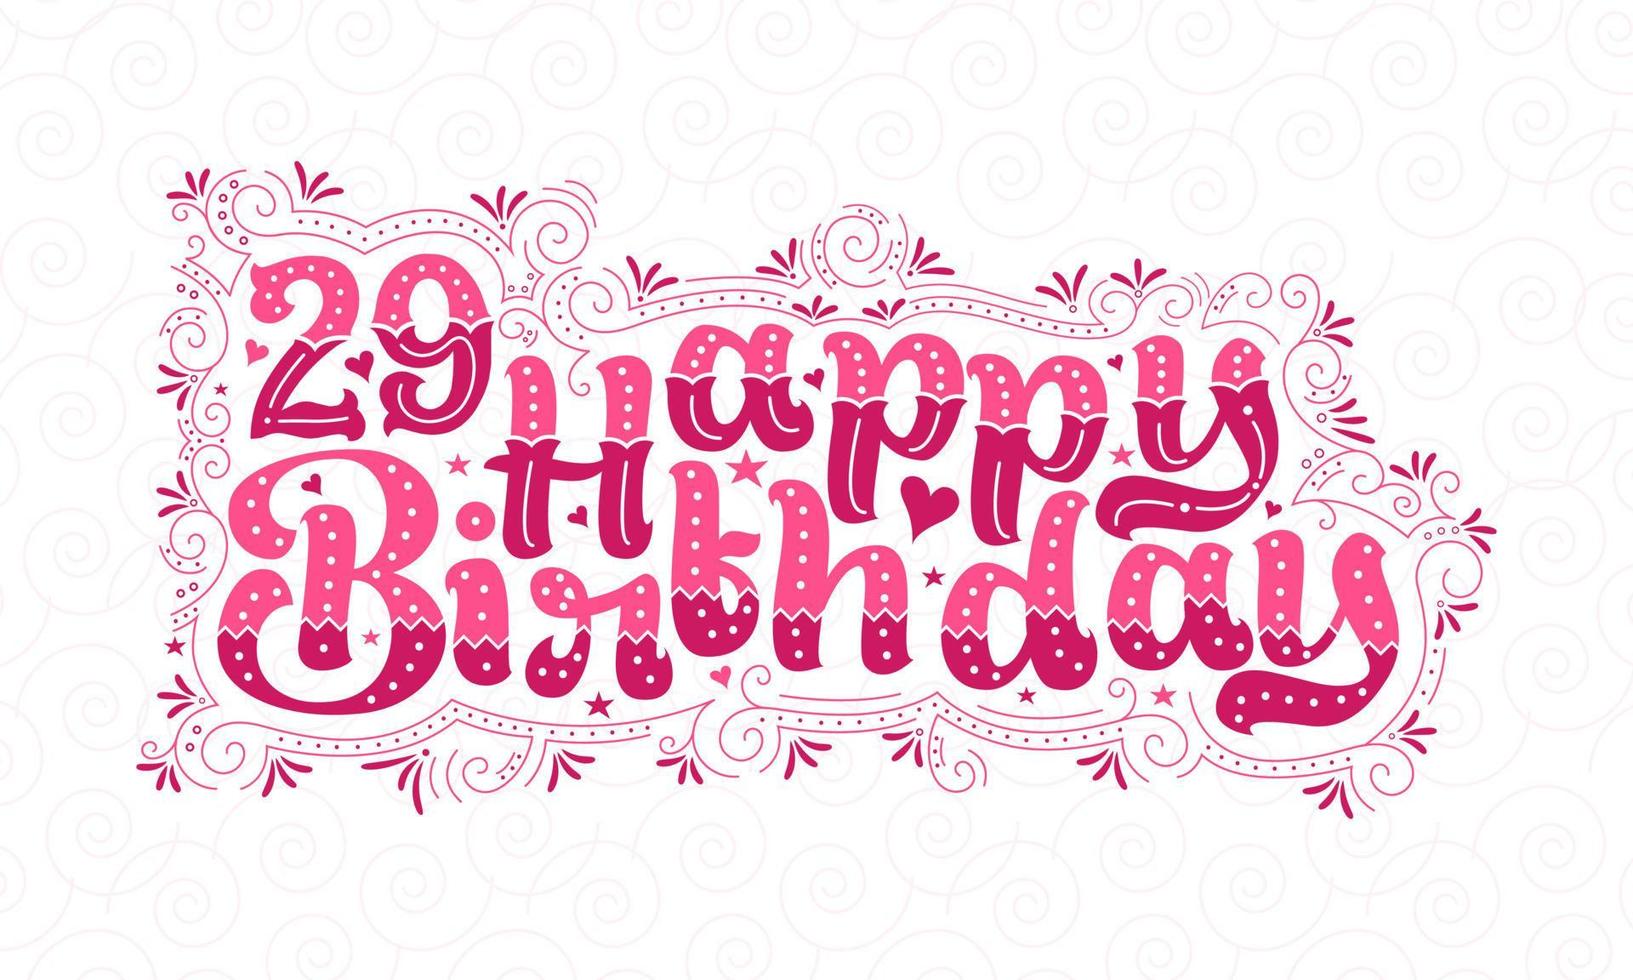 29:e grattis på födelsedagen bokstäver, 29 års födelsedag vacker typografidesign med rosa prickar, linjer och löv. vektor